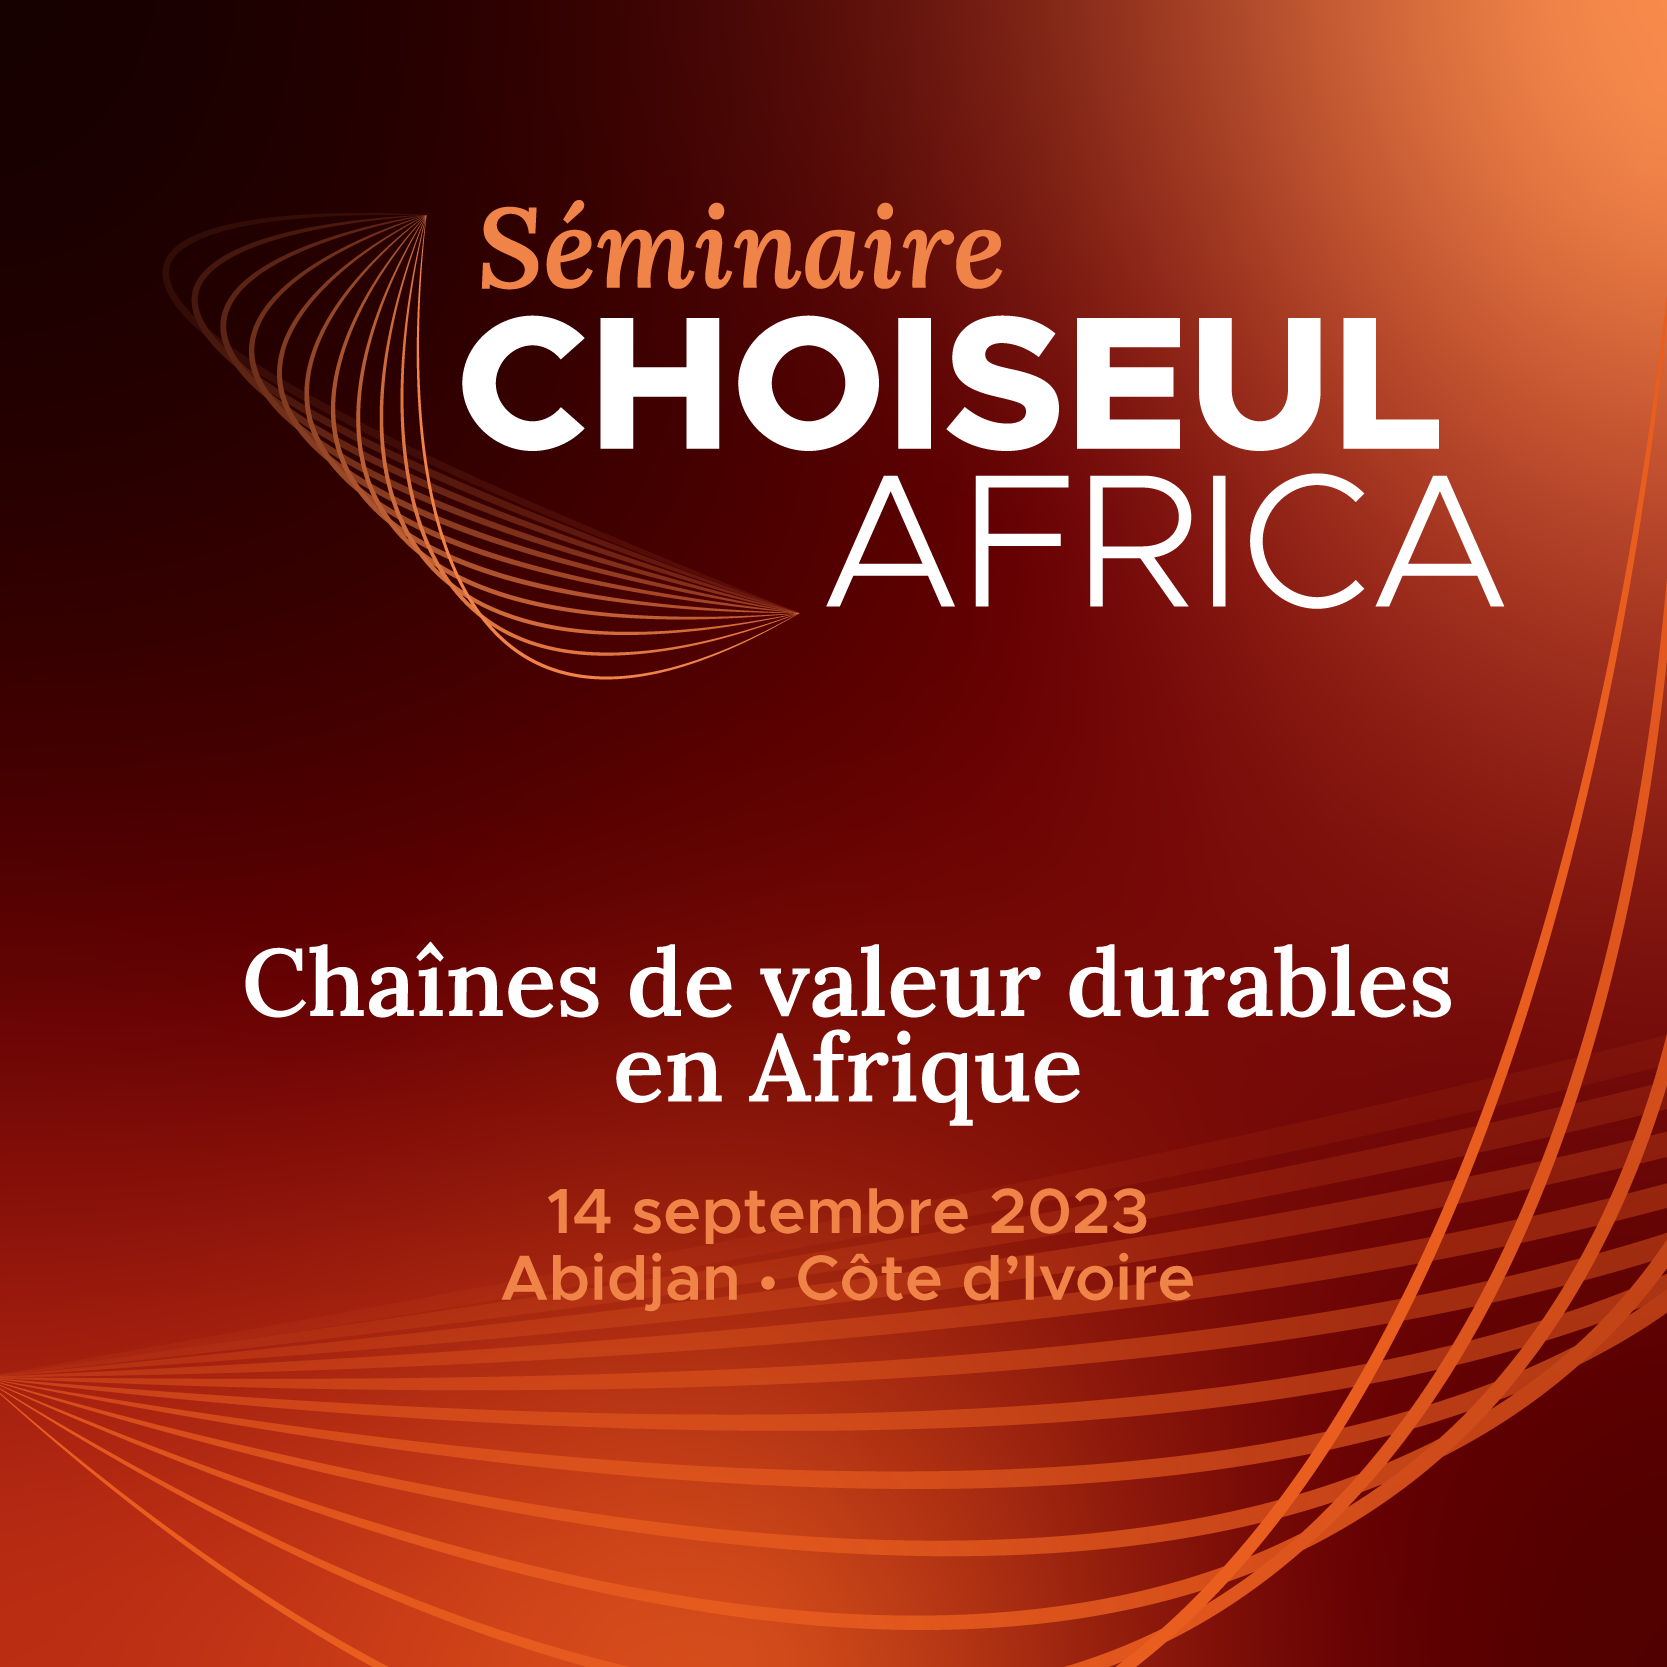 Séminaire Choiseul Africa – Chaînes de valeur durables en Afrique